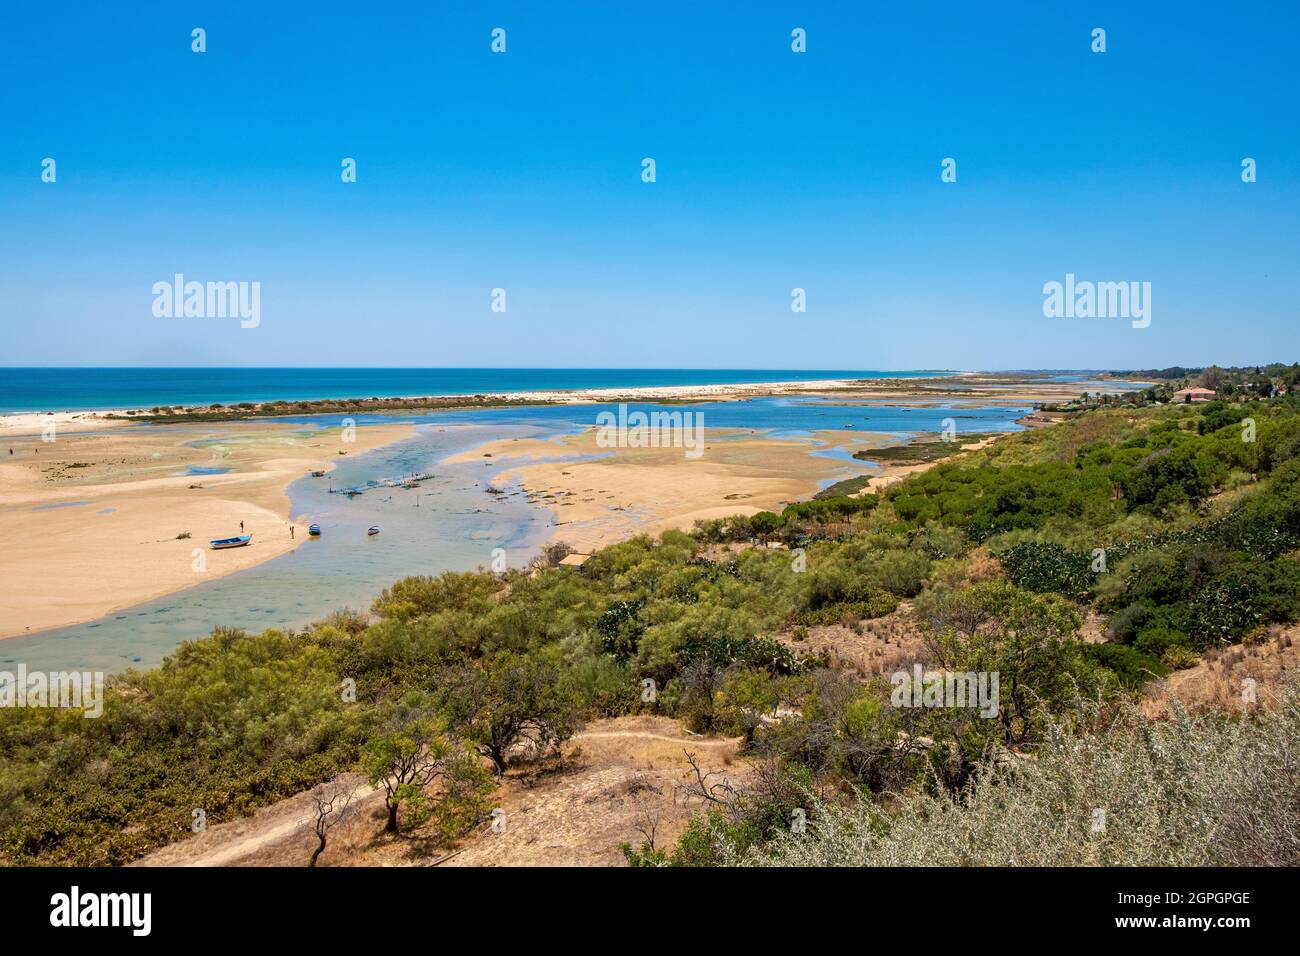 Portugal, Algarve, Tavira, parque natural de Ria Formosa, playa de Cacela Velha Foto de stock